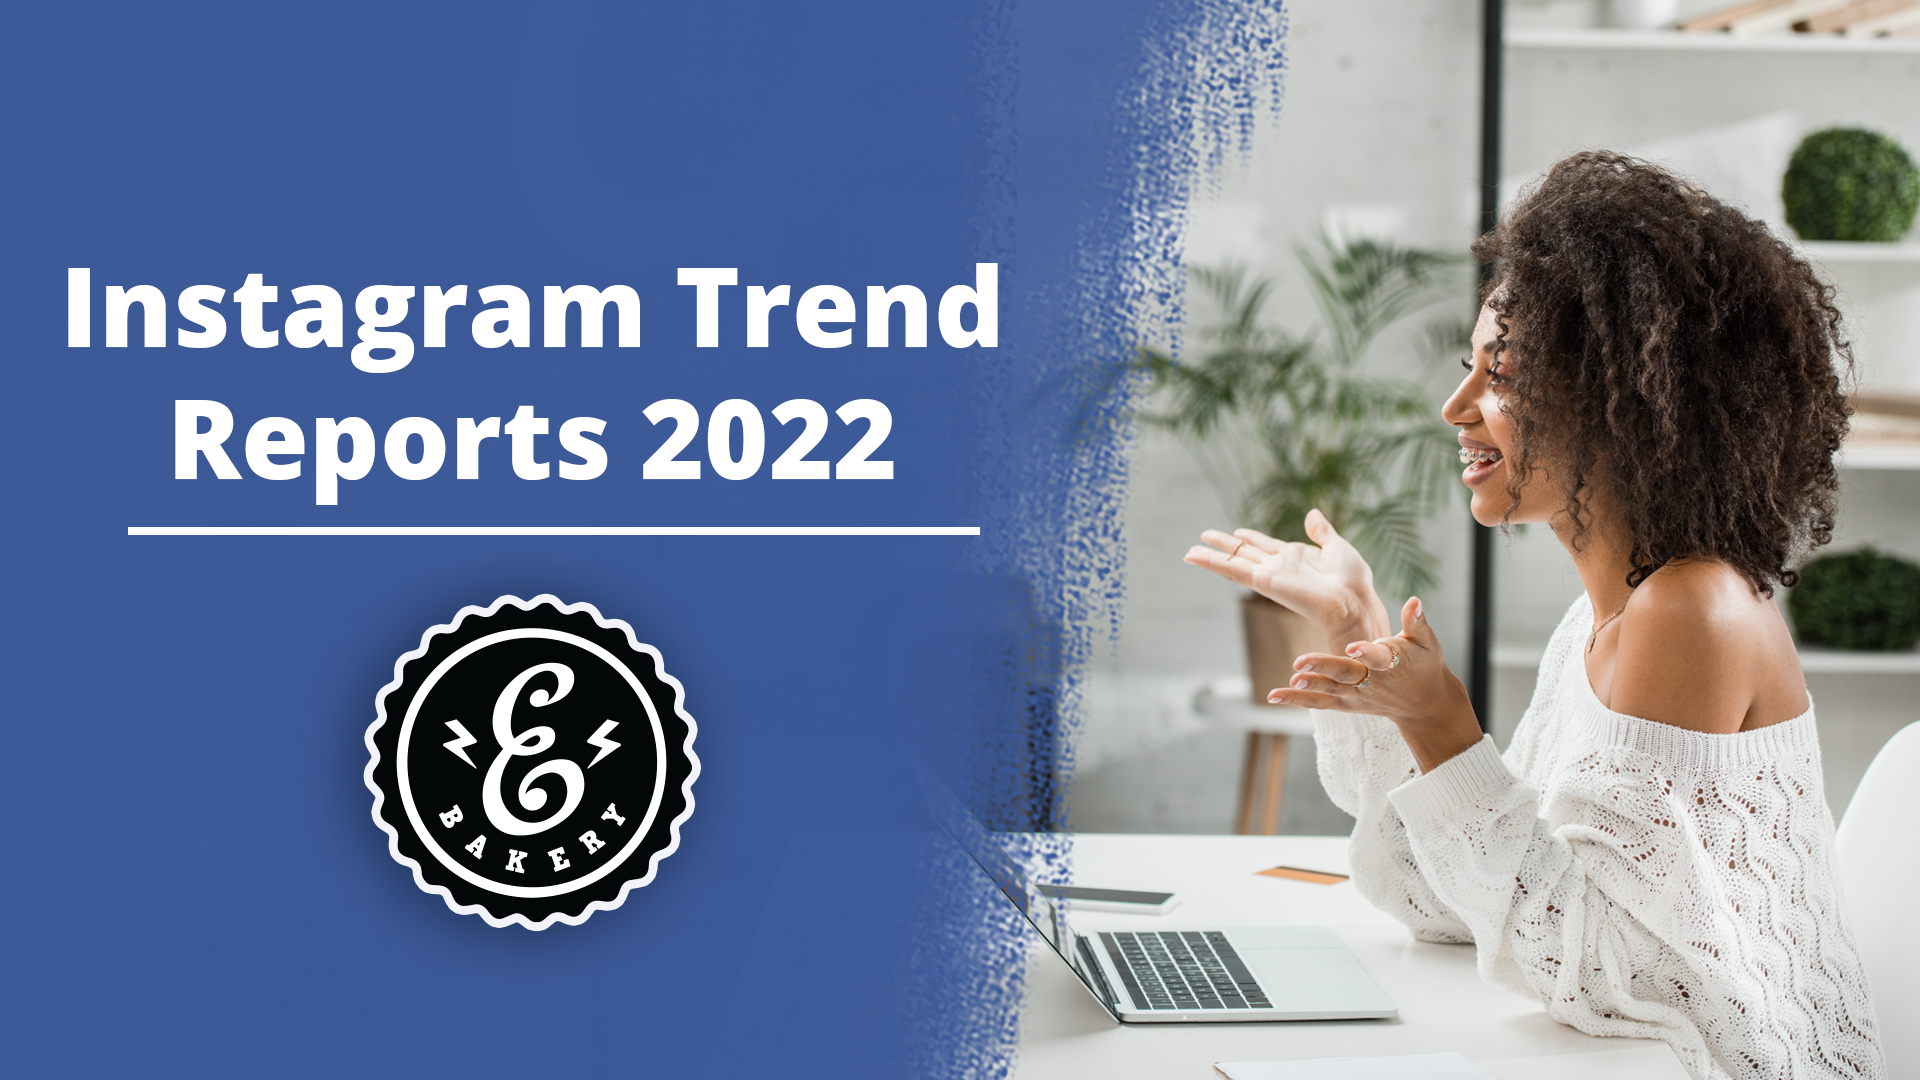 Instagram Trend Reports 2022 – Trends on Instagram in 2022